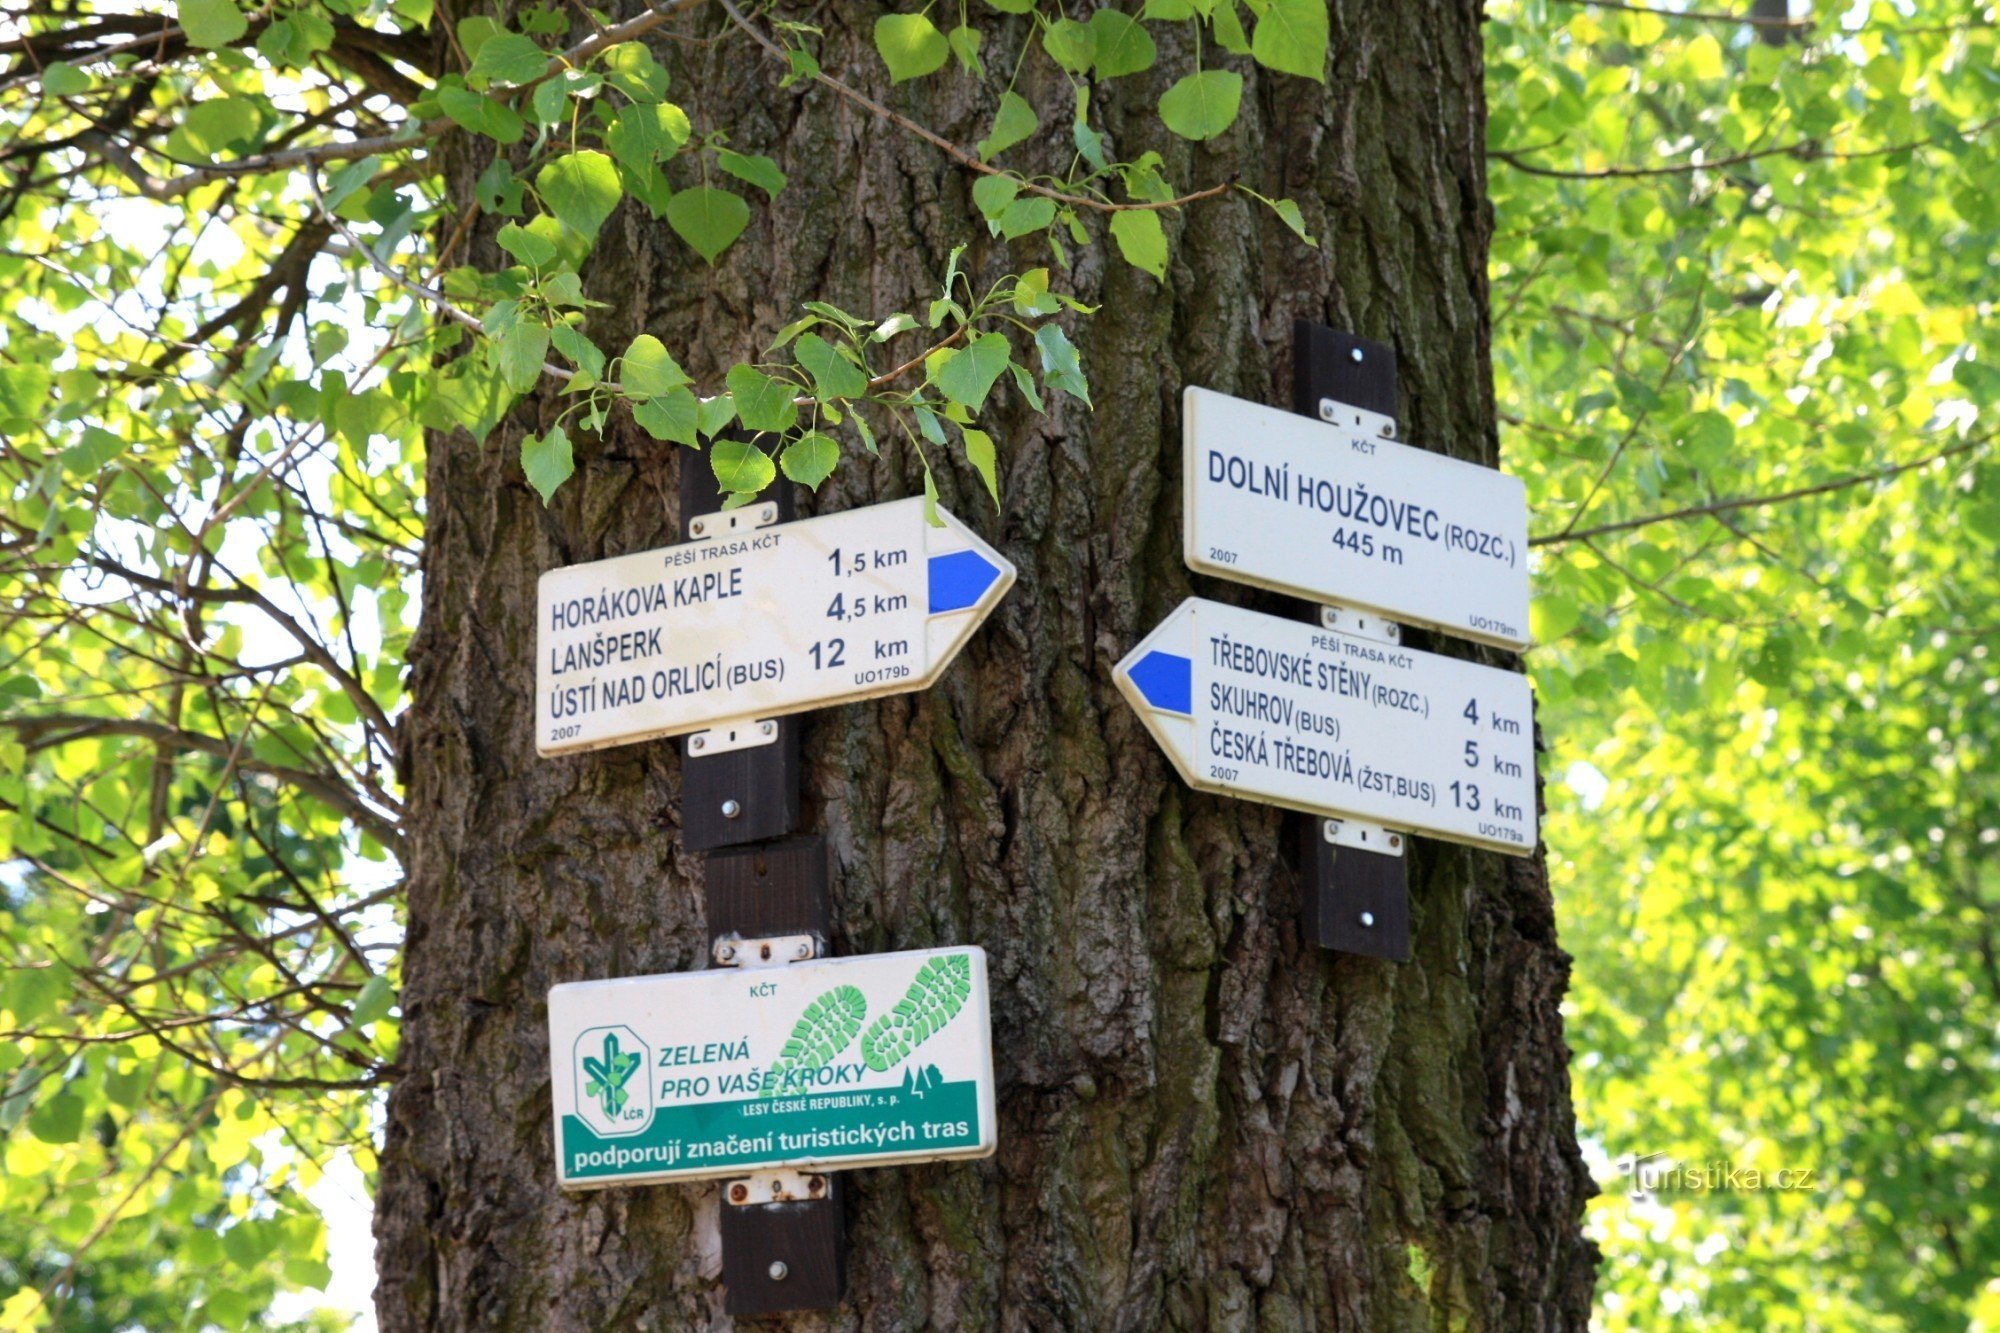 Răscruce turistică Dolní Houžovec